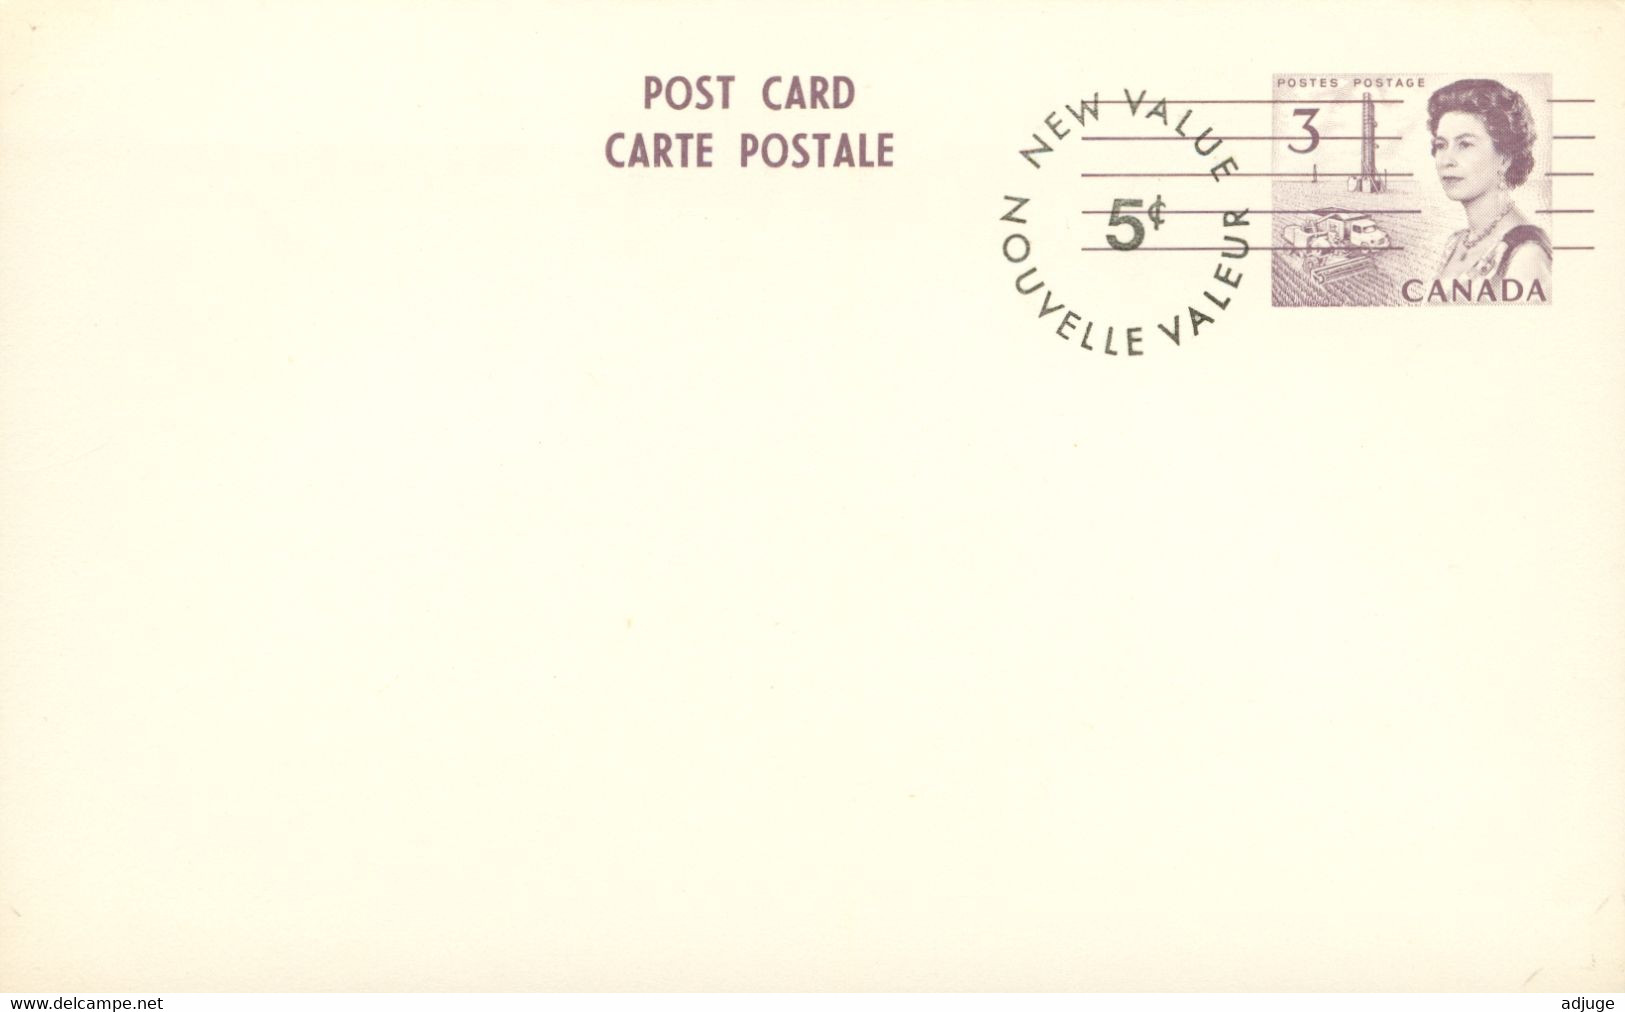 Entier Postal - CANADA - Reine Elizabeth II & Les Prairies- 3 Cents Surchagé 5 Cents* CP Format  14 X 8,5 Cmm ****2 Scan - 1953-.... Règne D'Elizabeth II